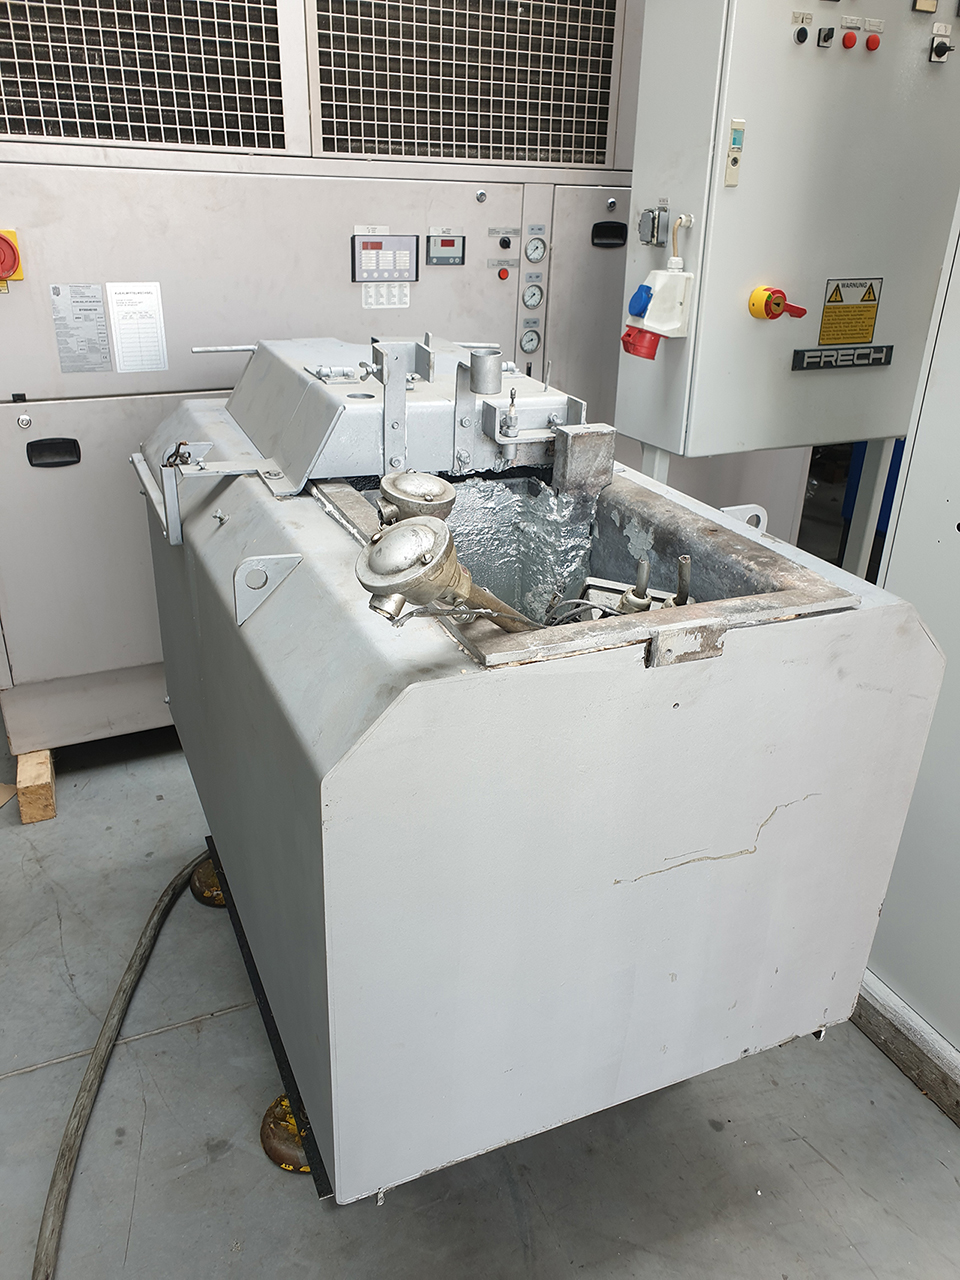 Maszyna odlewnicza gorącokomorowa Frech DAW 80 S-RC WK1409, używana